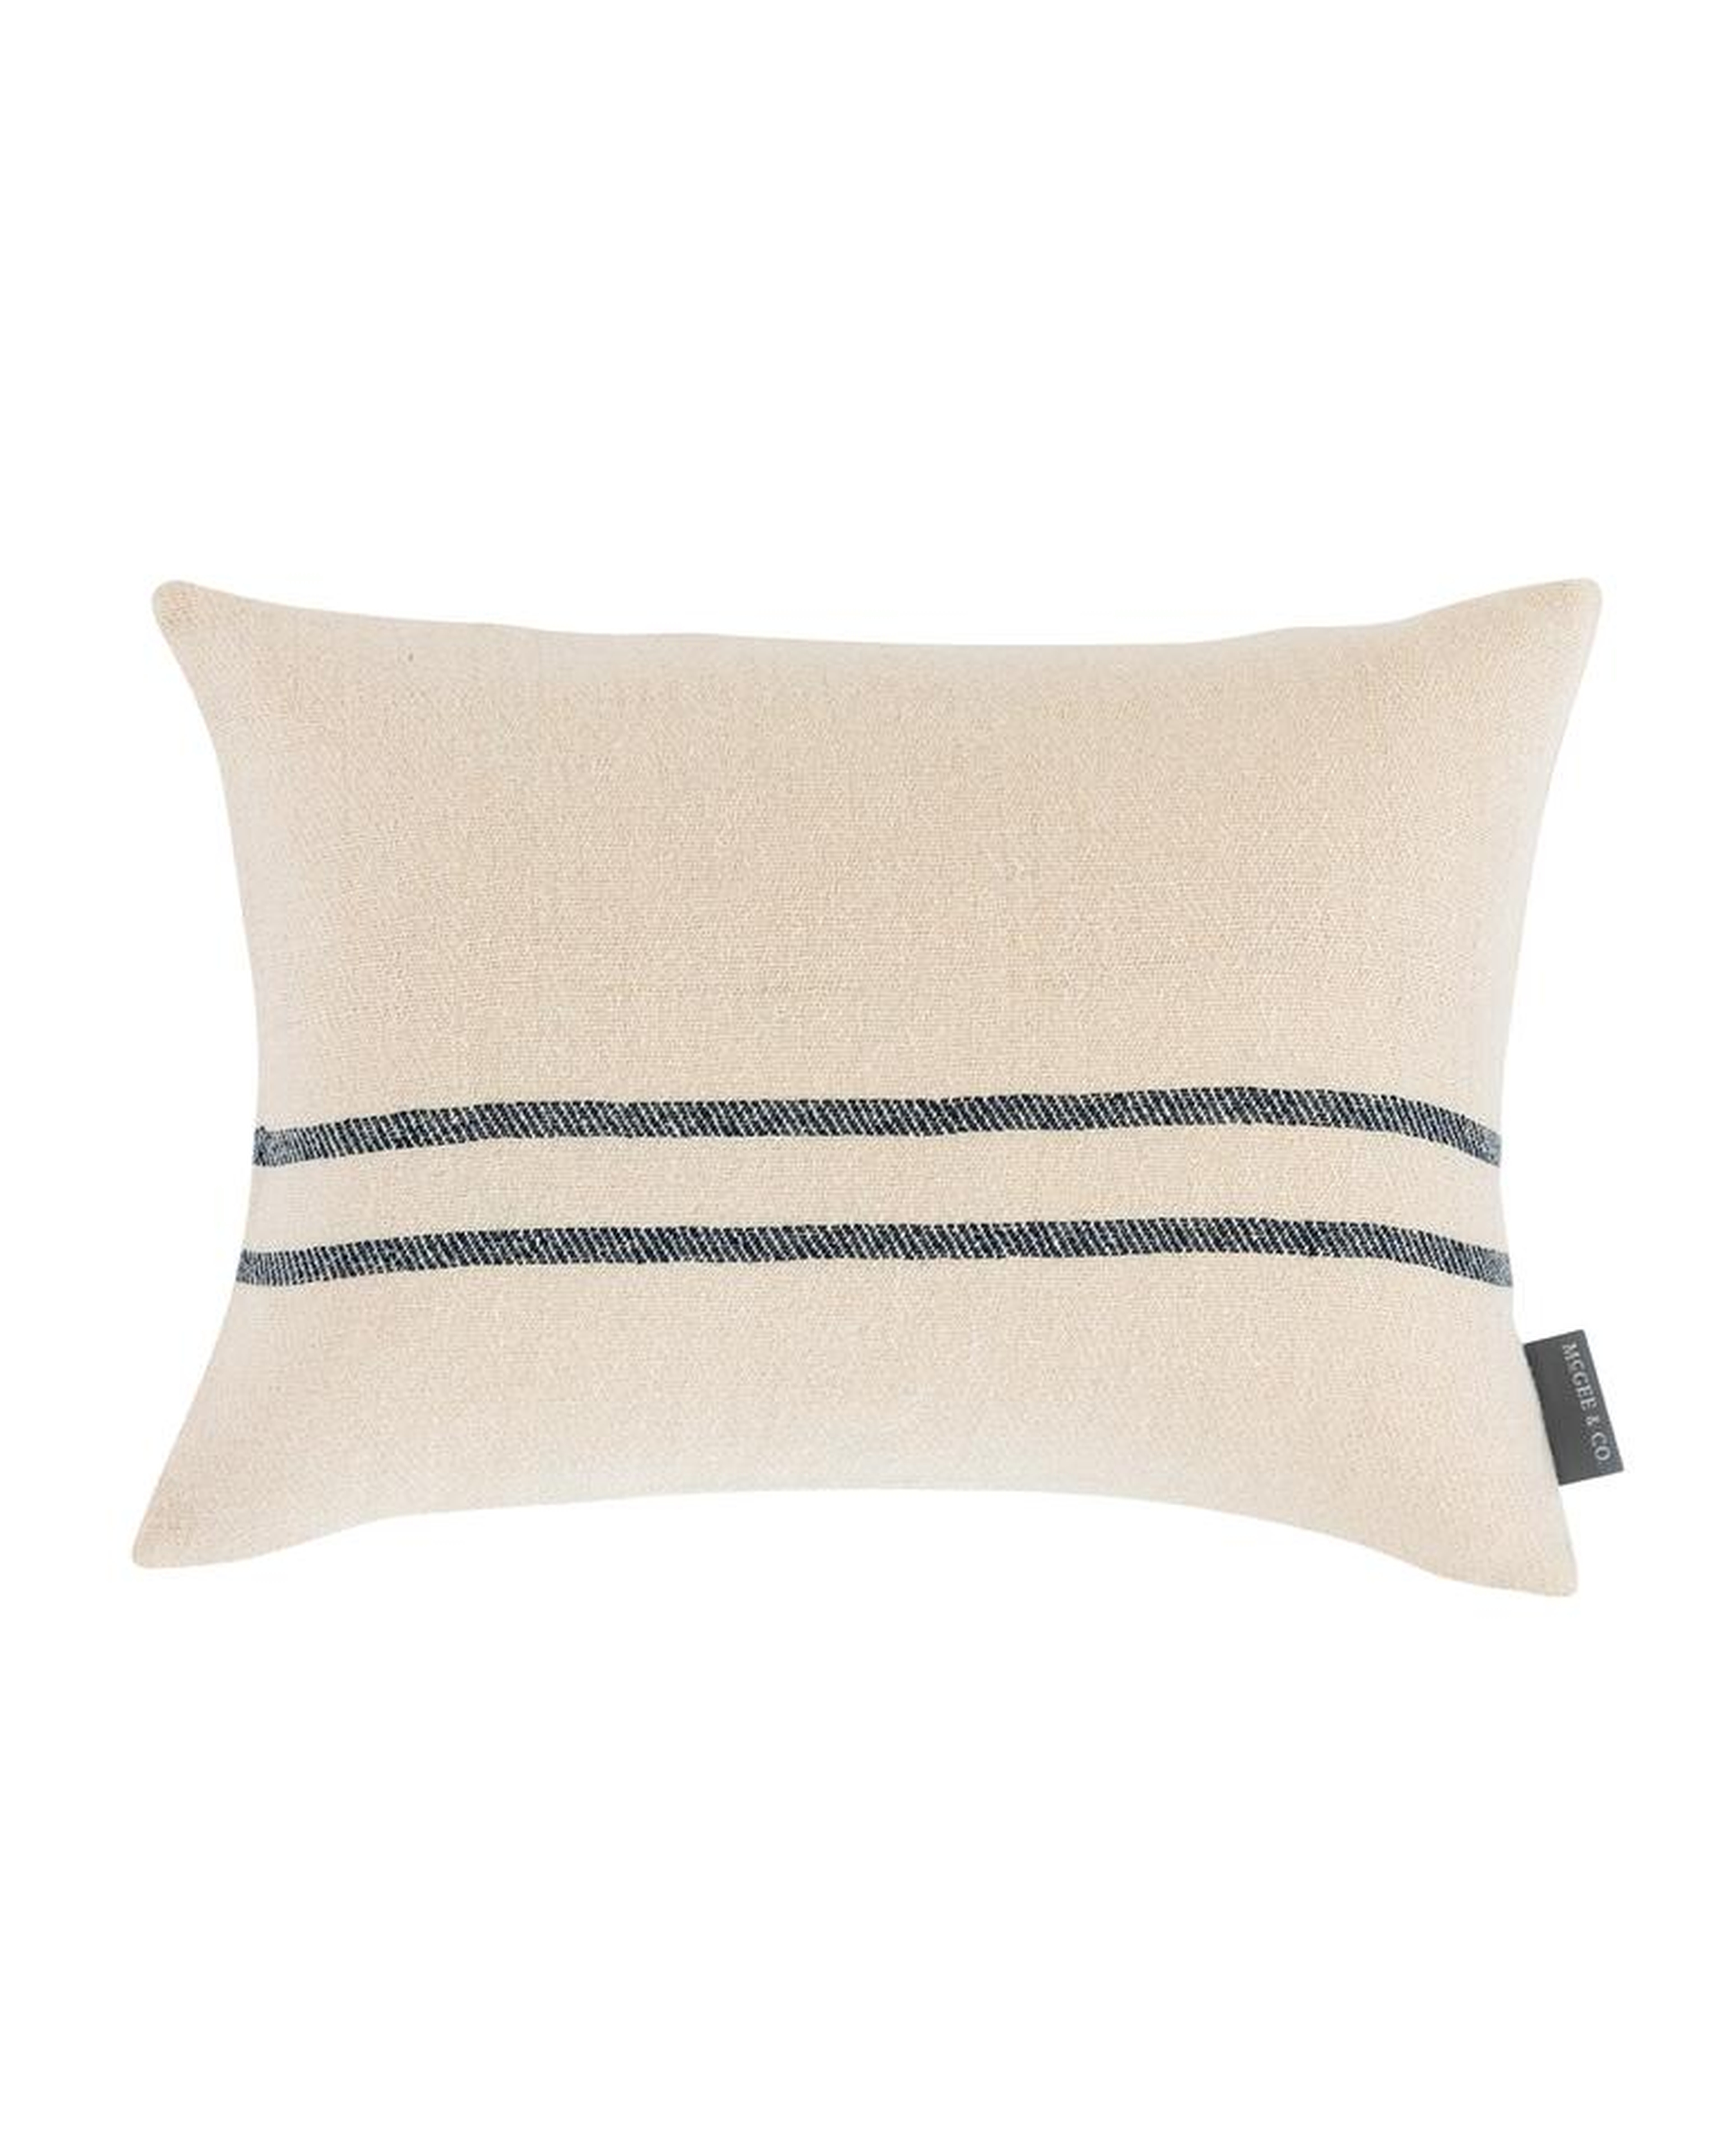 Abigail Silk Stripe Pillow Cover, 20" x 14" - McGee & Co.